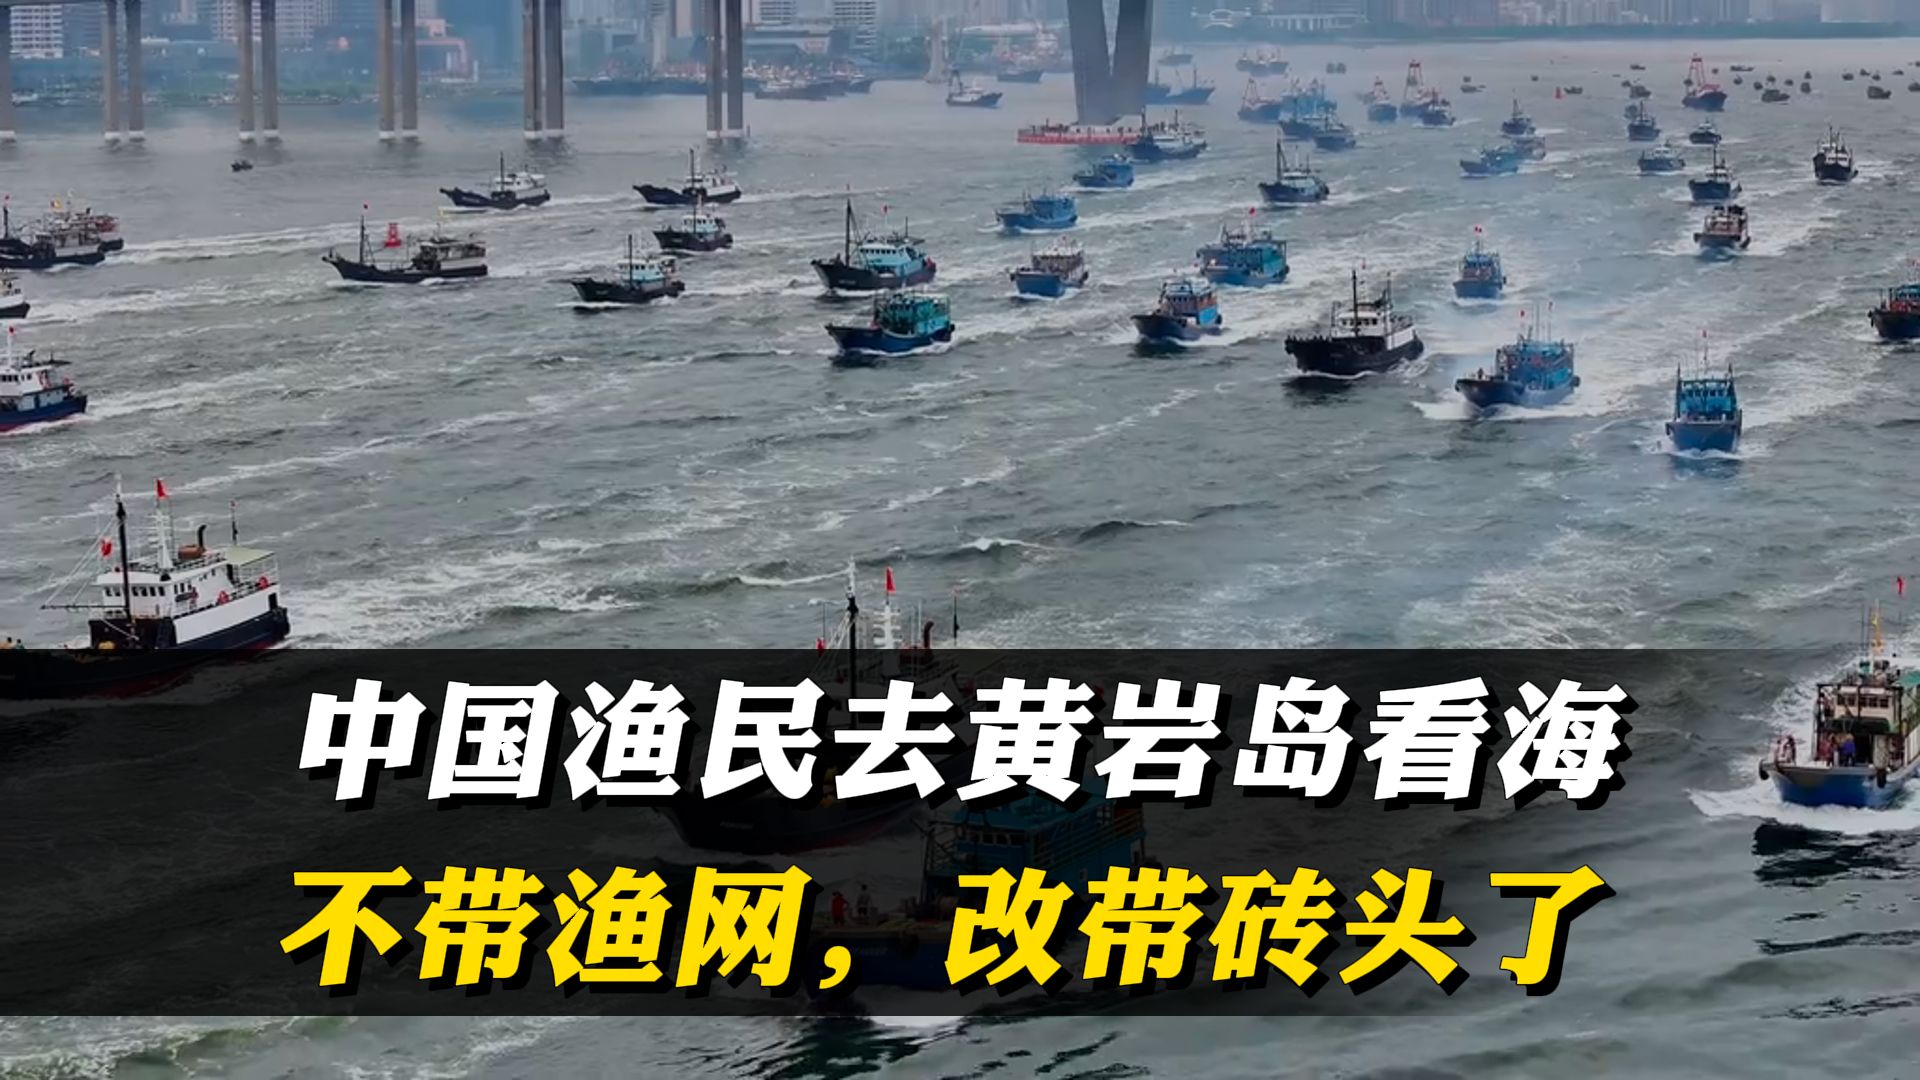 中国渔民去黄岩岛看海，不带渔网，改带砖头了，你们要盖房子吗 #渔民 #黄岩岛海域